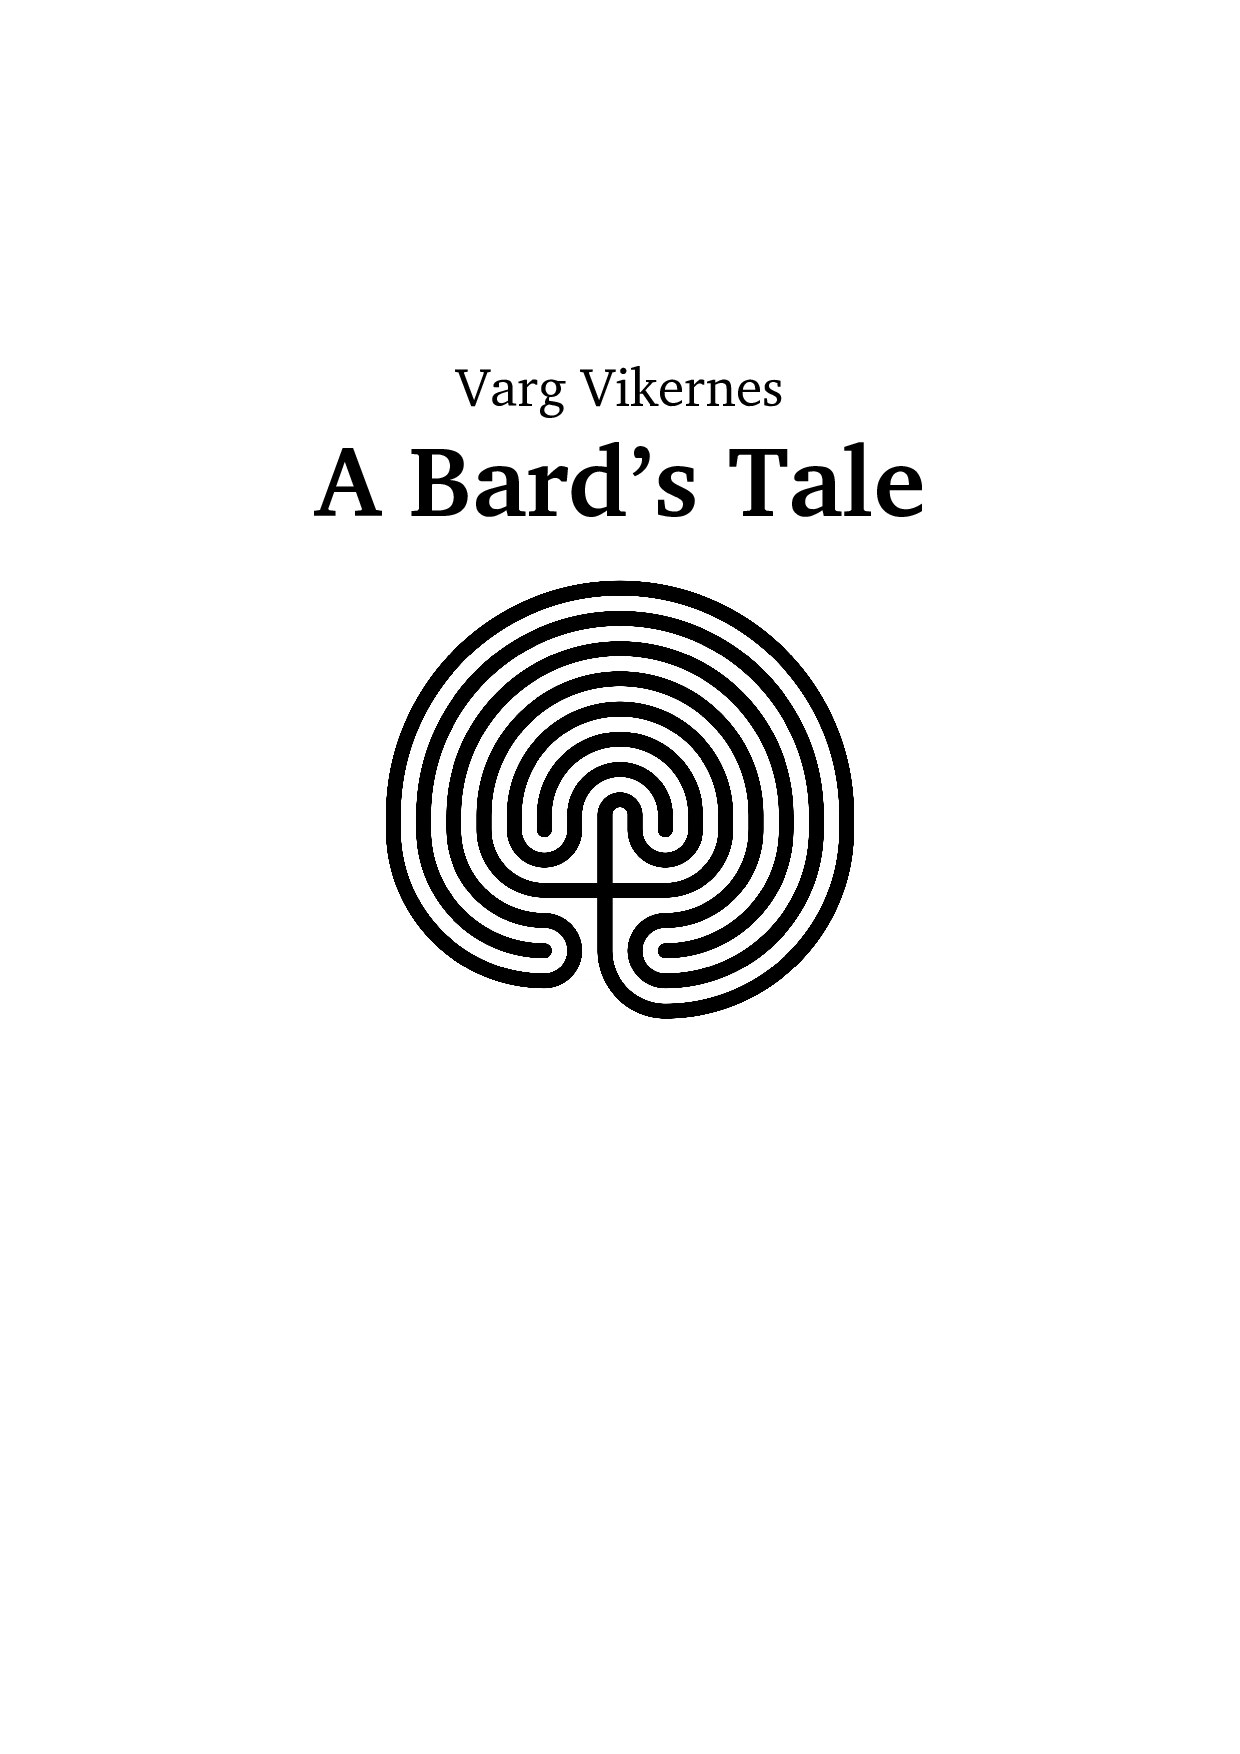 A Bard's Tale